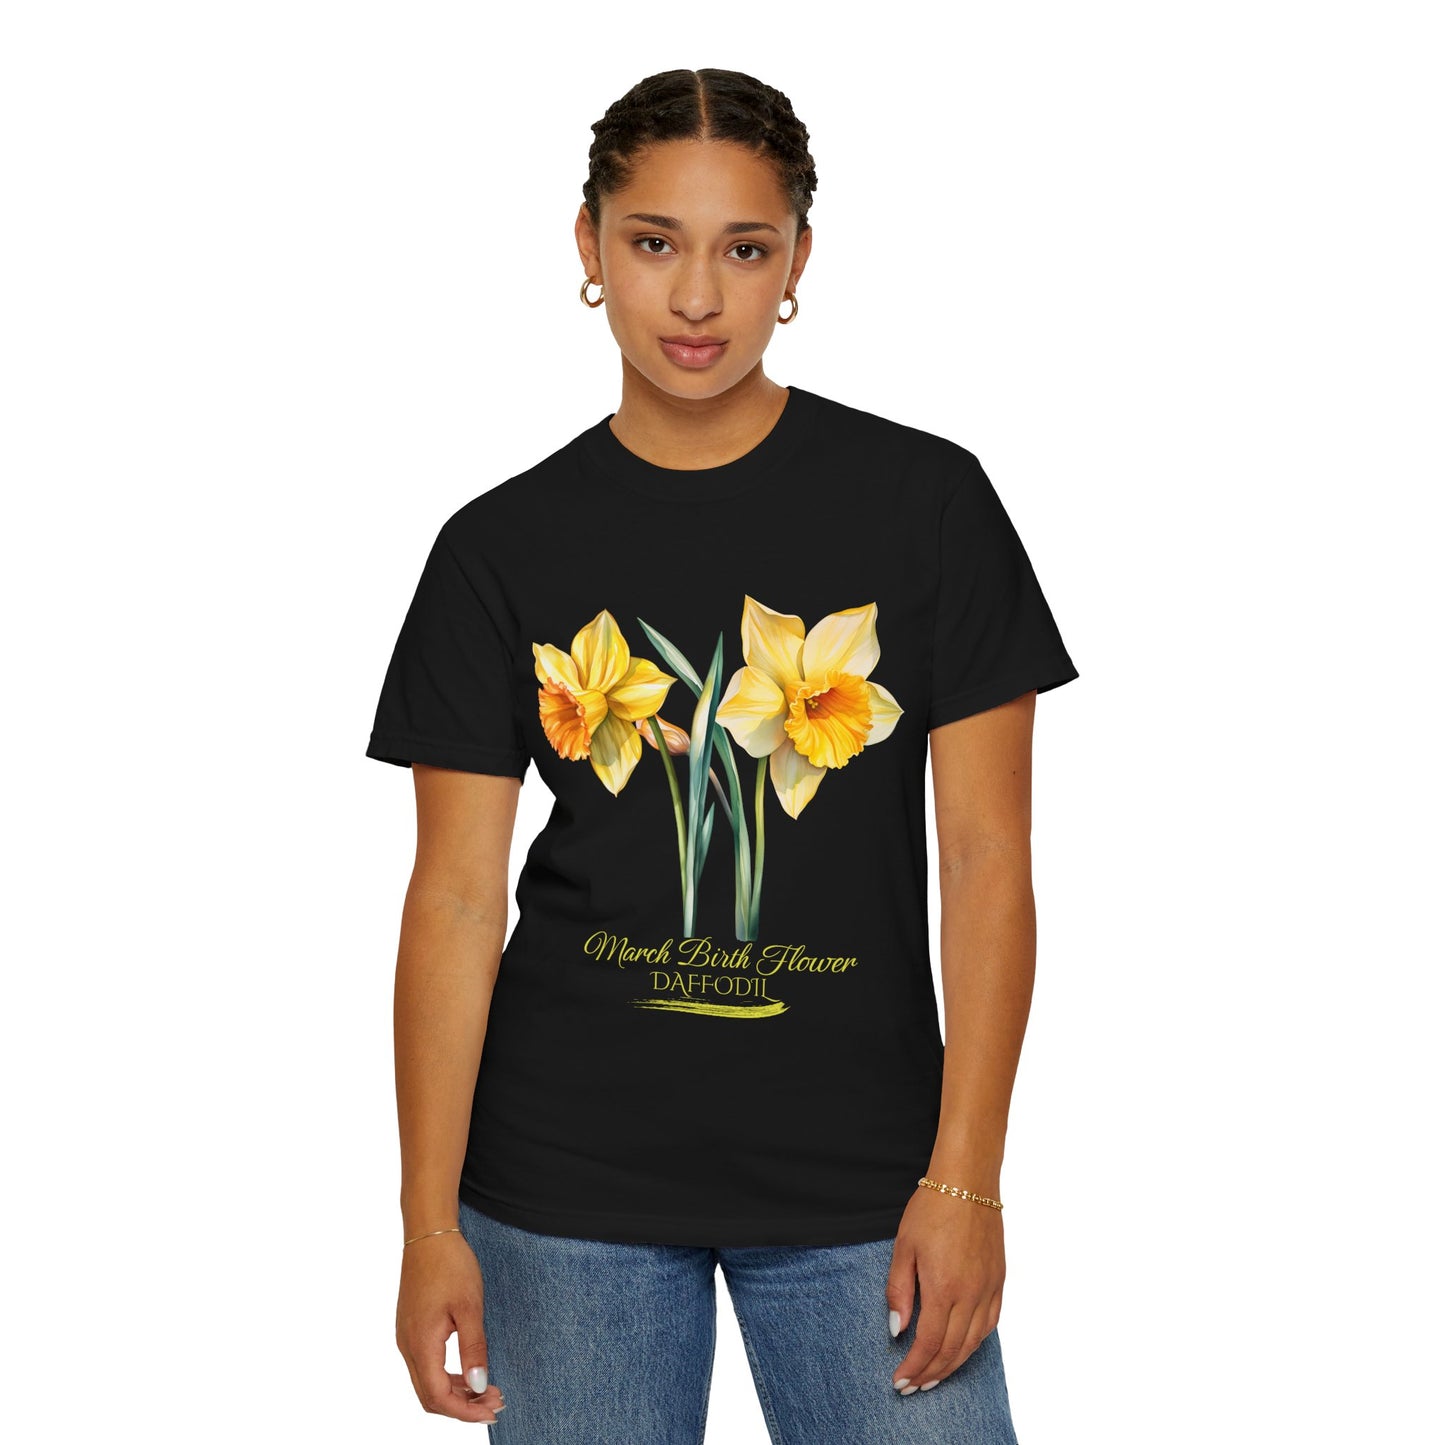 March Birth Flower "Daffodil" (For Print on Dark Fabric) - Unisex Garment-Dyed T-shirt